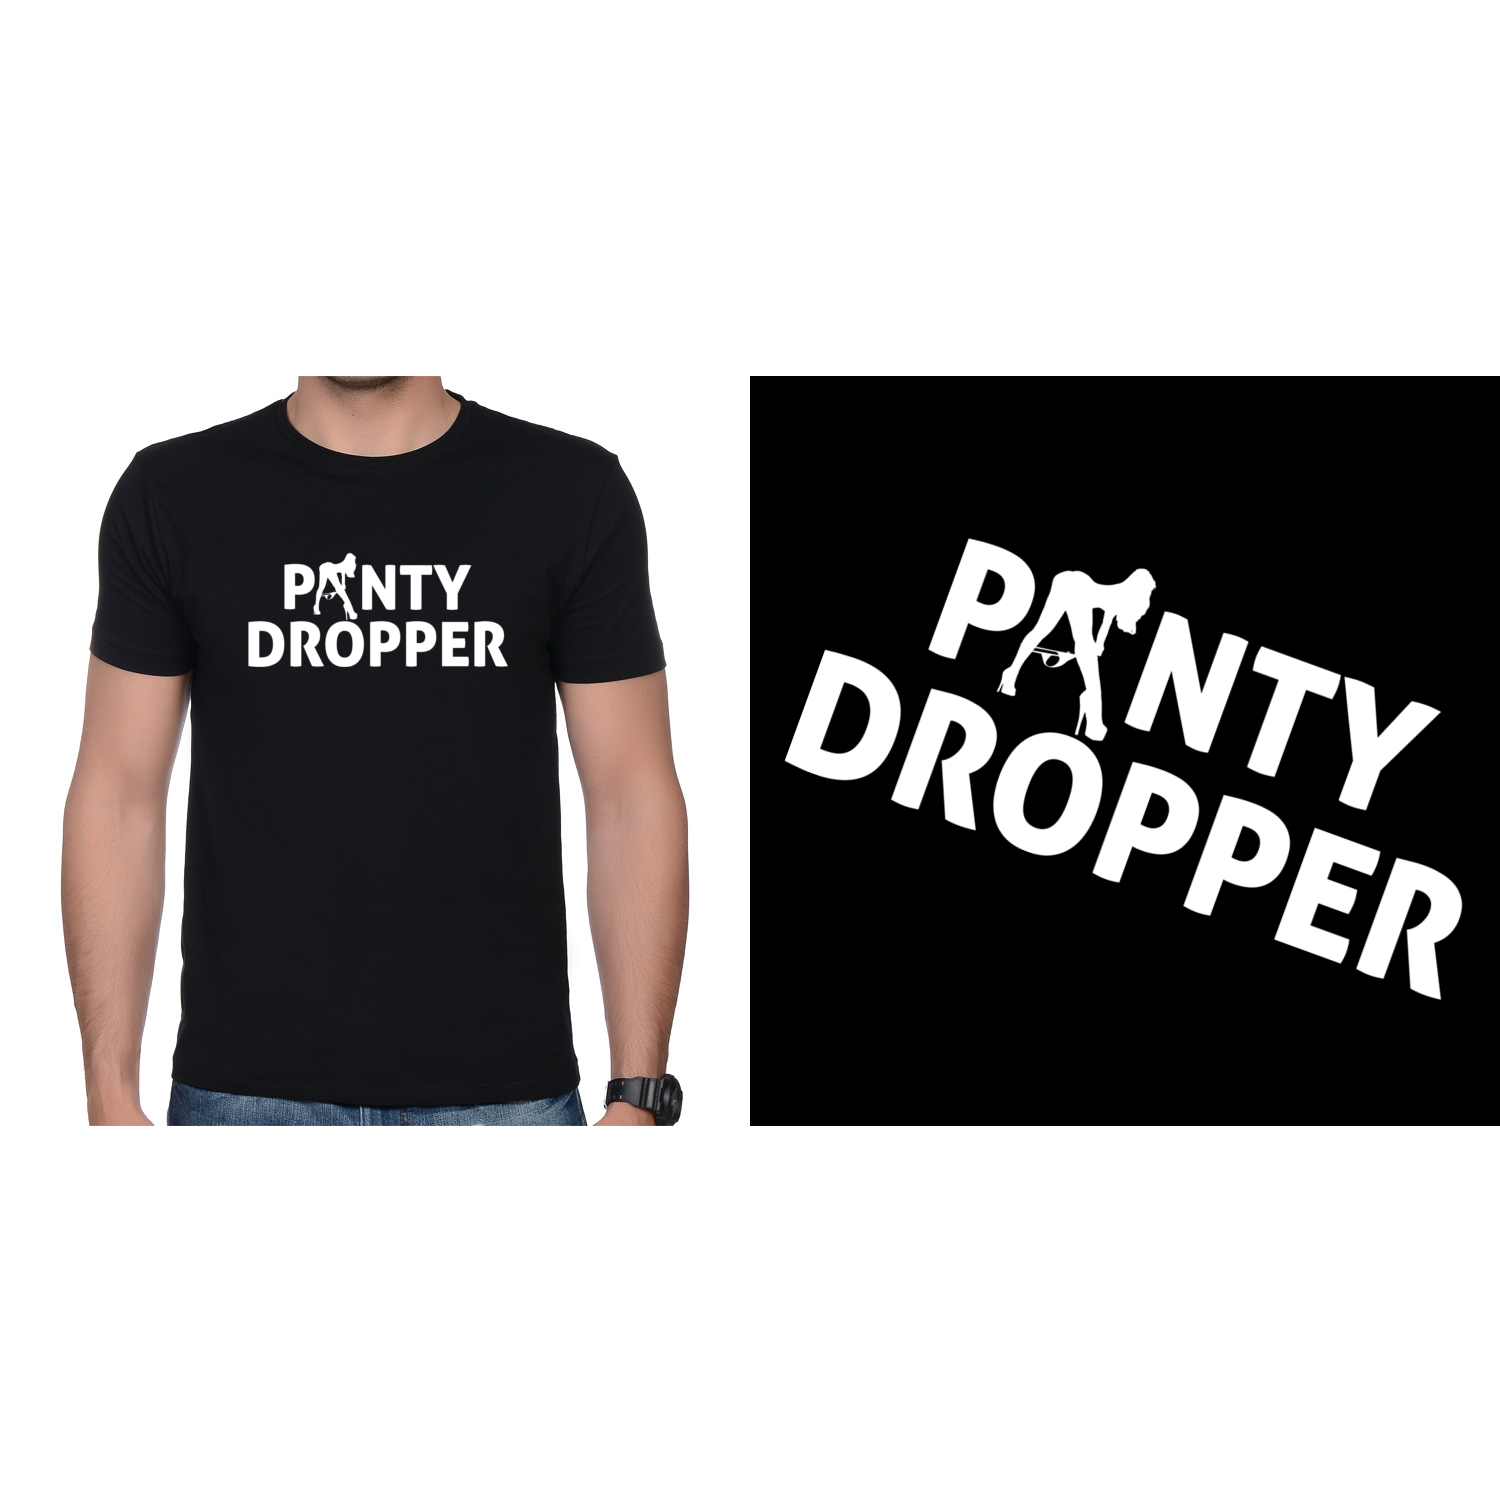 PANTY DROPPER - koszulki z nadrukiem